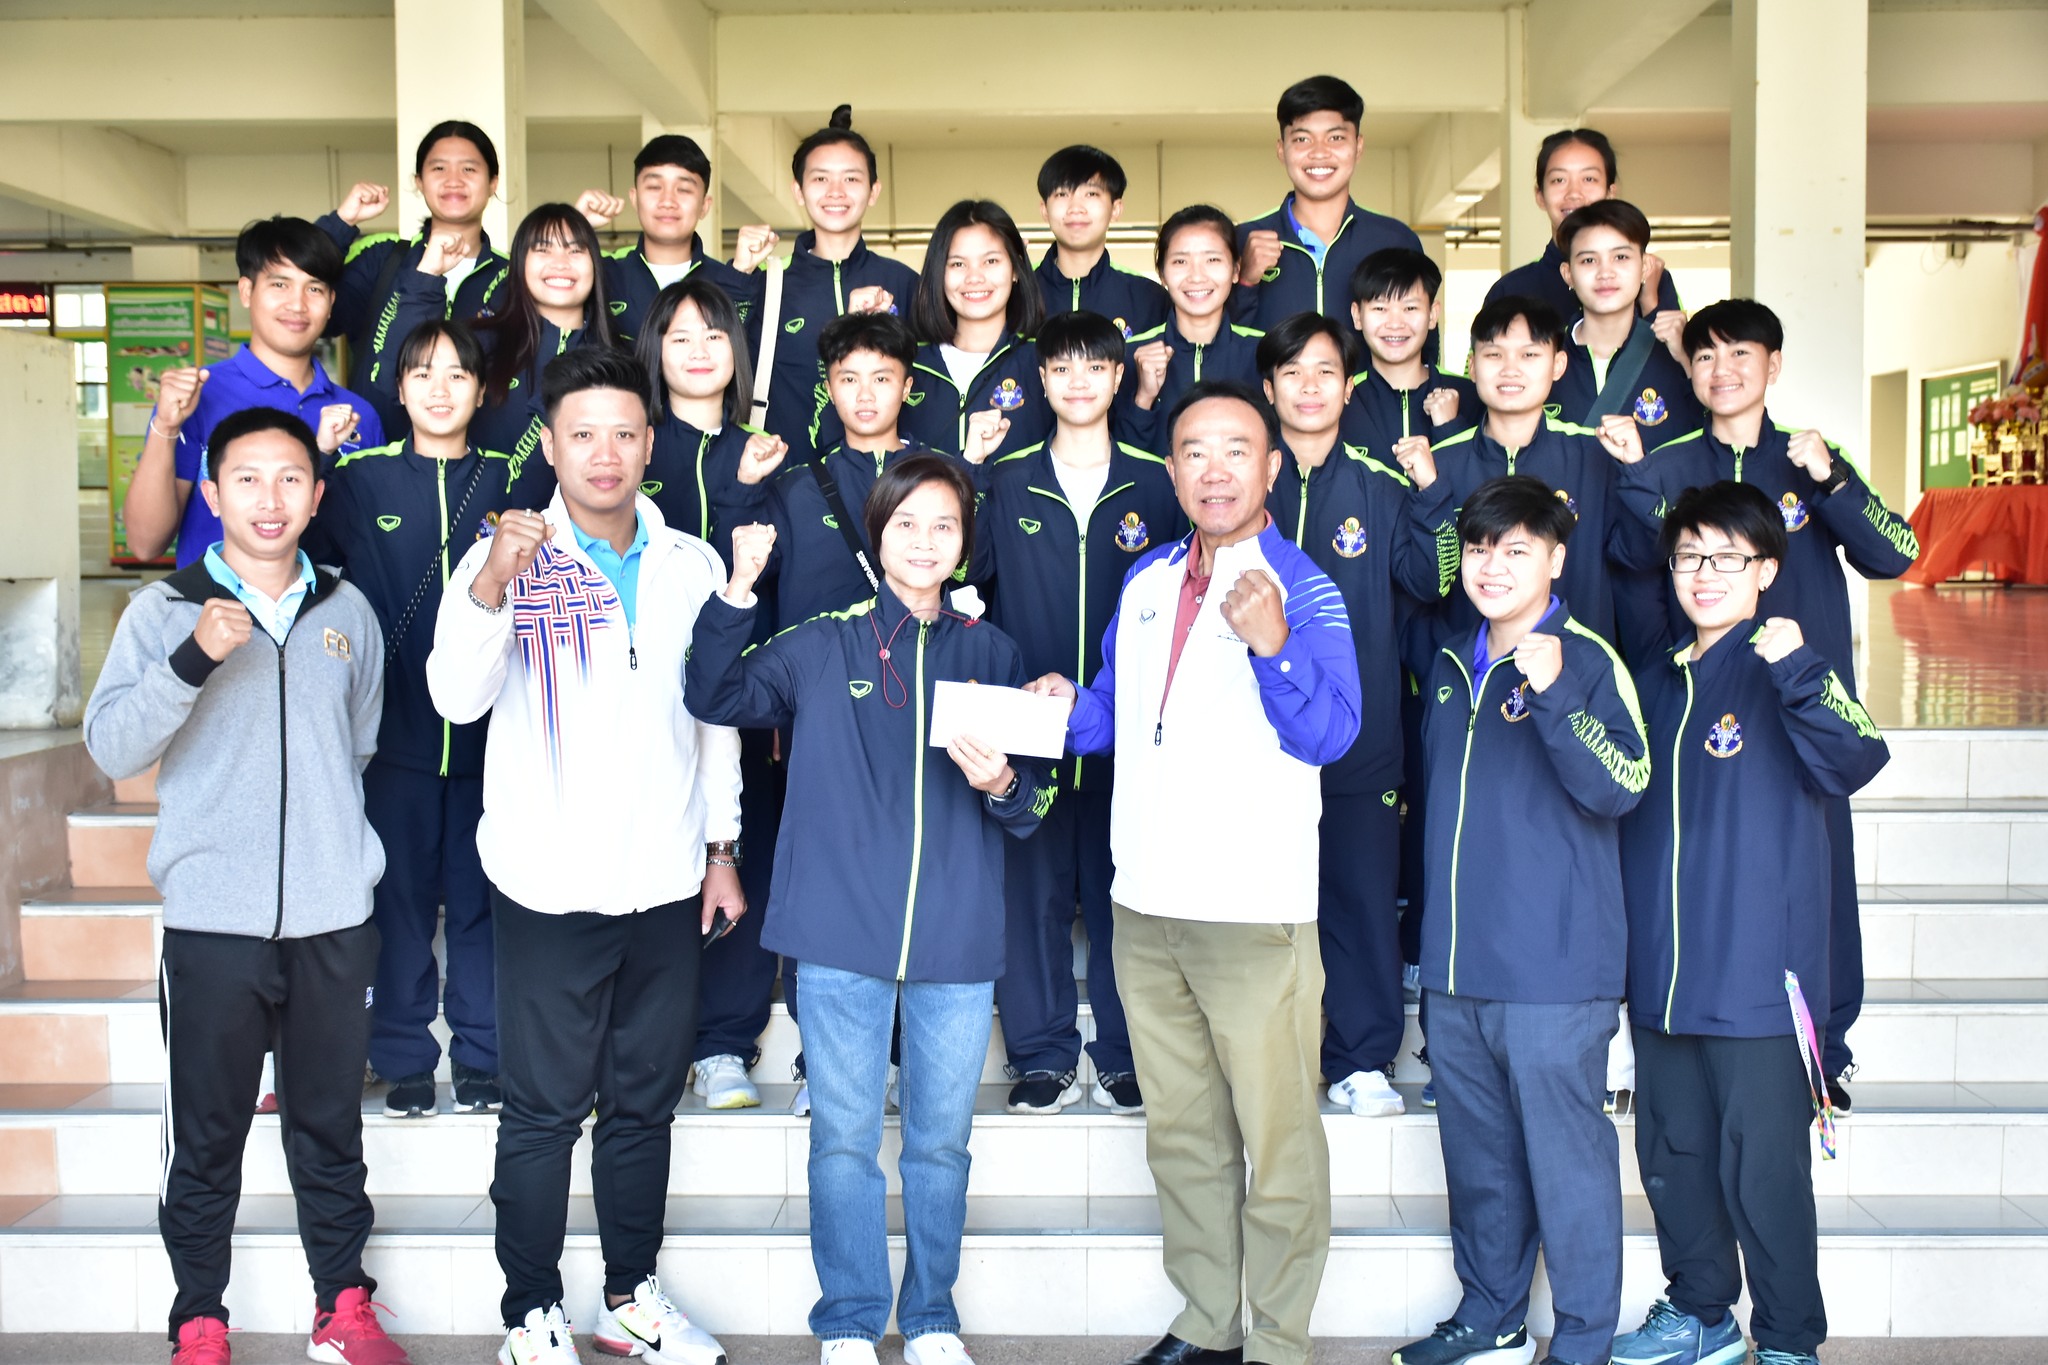 รองอธิการบดีมหาวิทยาลัยการกีฬาแห่งชาติ ประจำวิทยาเขตมหาสารคาม ให้กำลังใจทีมนักกีฬา ในการแข่งขันกีฬามหาวิทยาลัยแห่งประเทศไทย ครั้งที่ 48